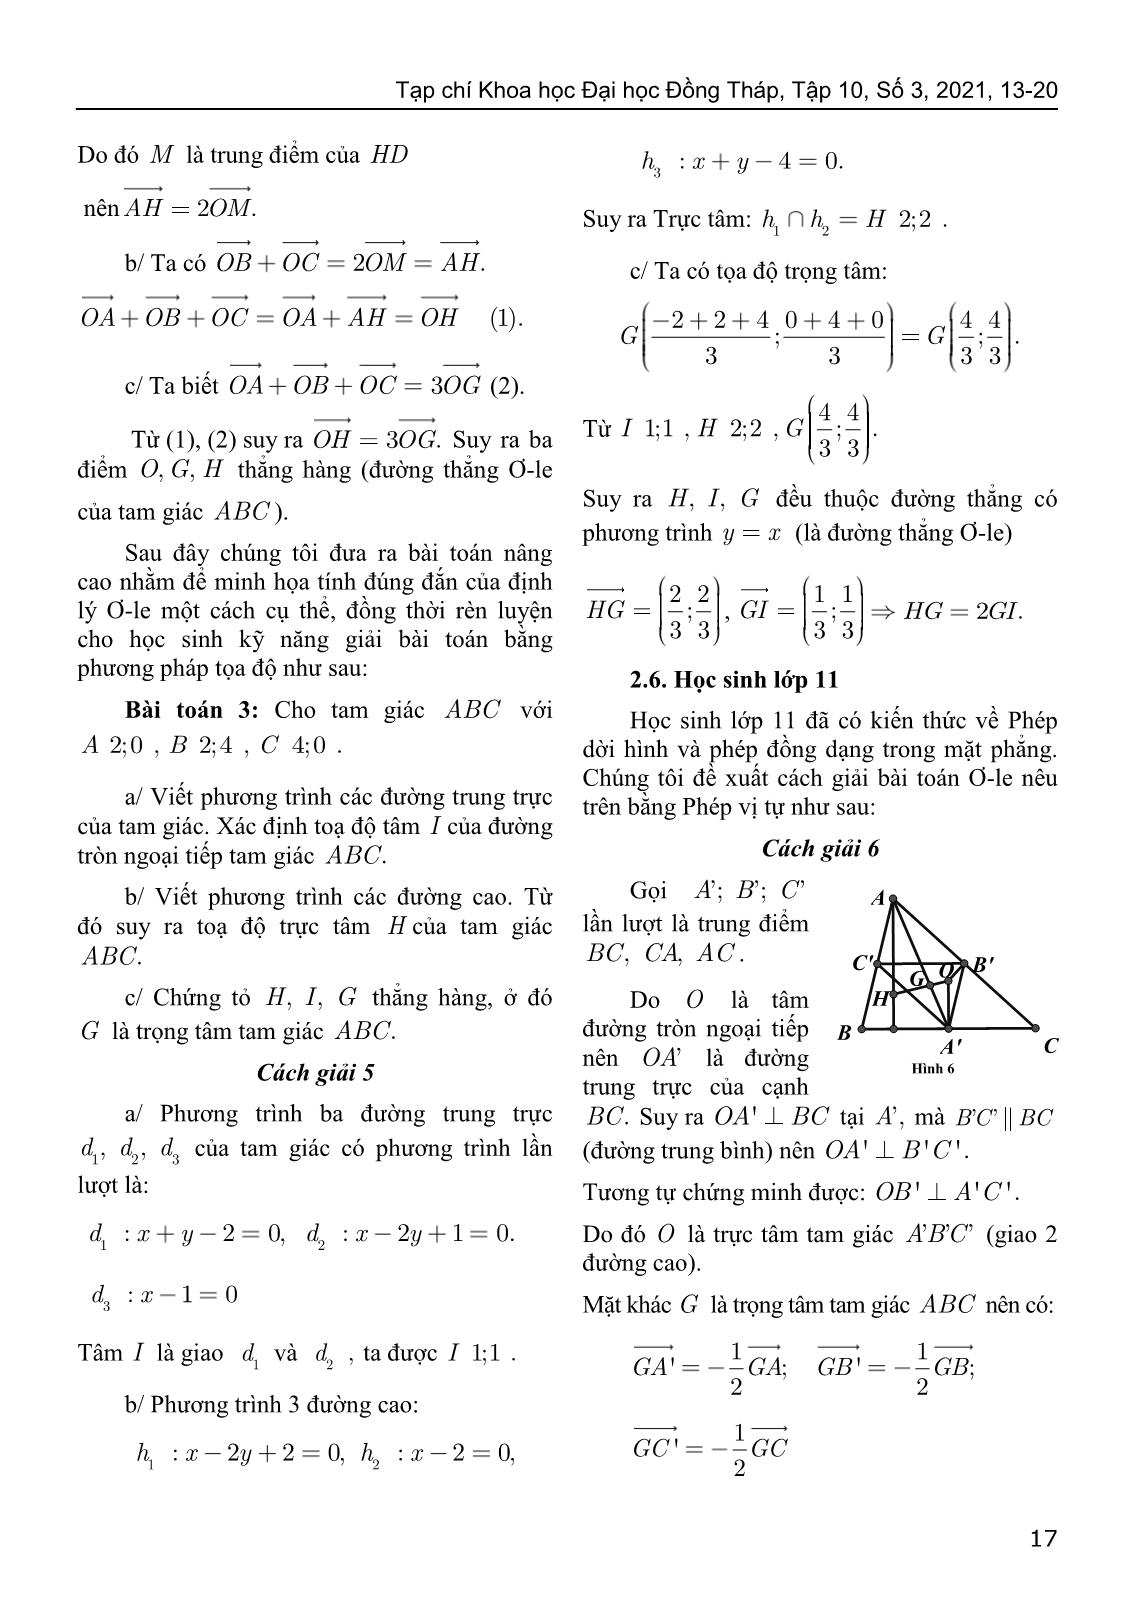 Một số thể hiện đường thẳng Ơ-le trong chương trình toán phổ thông trang 5